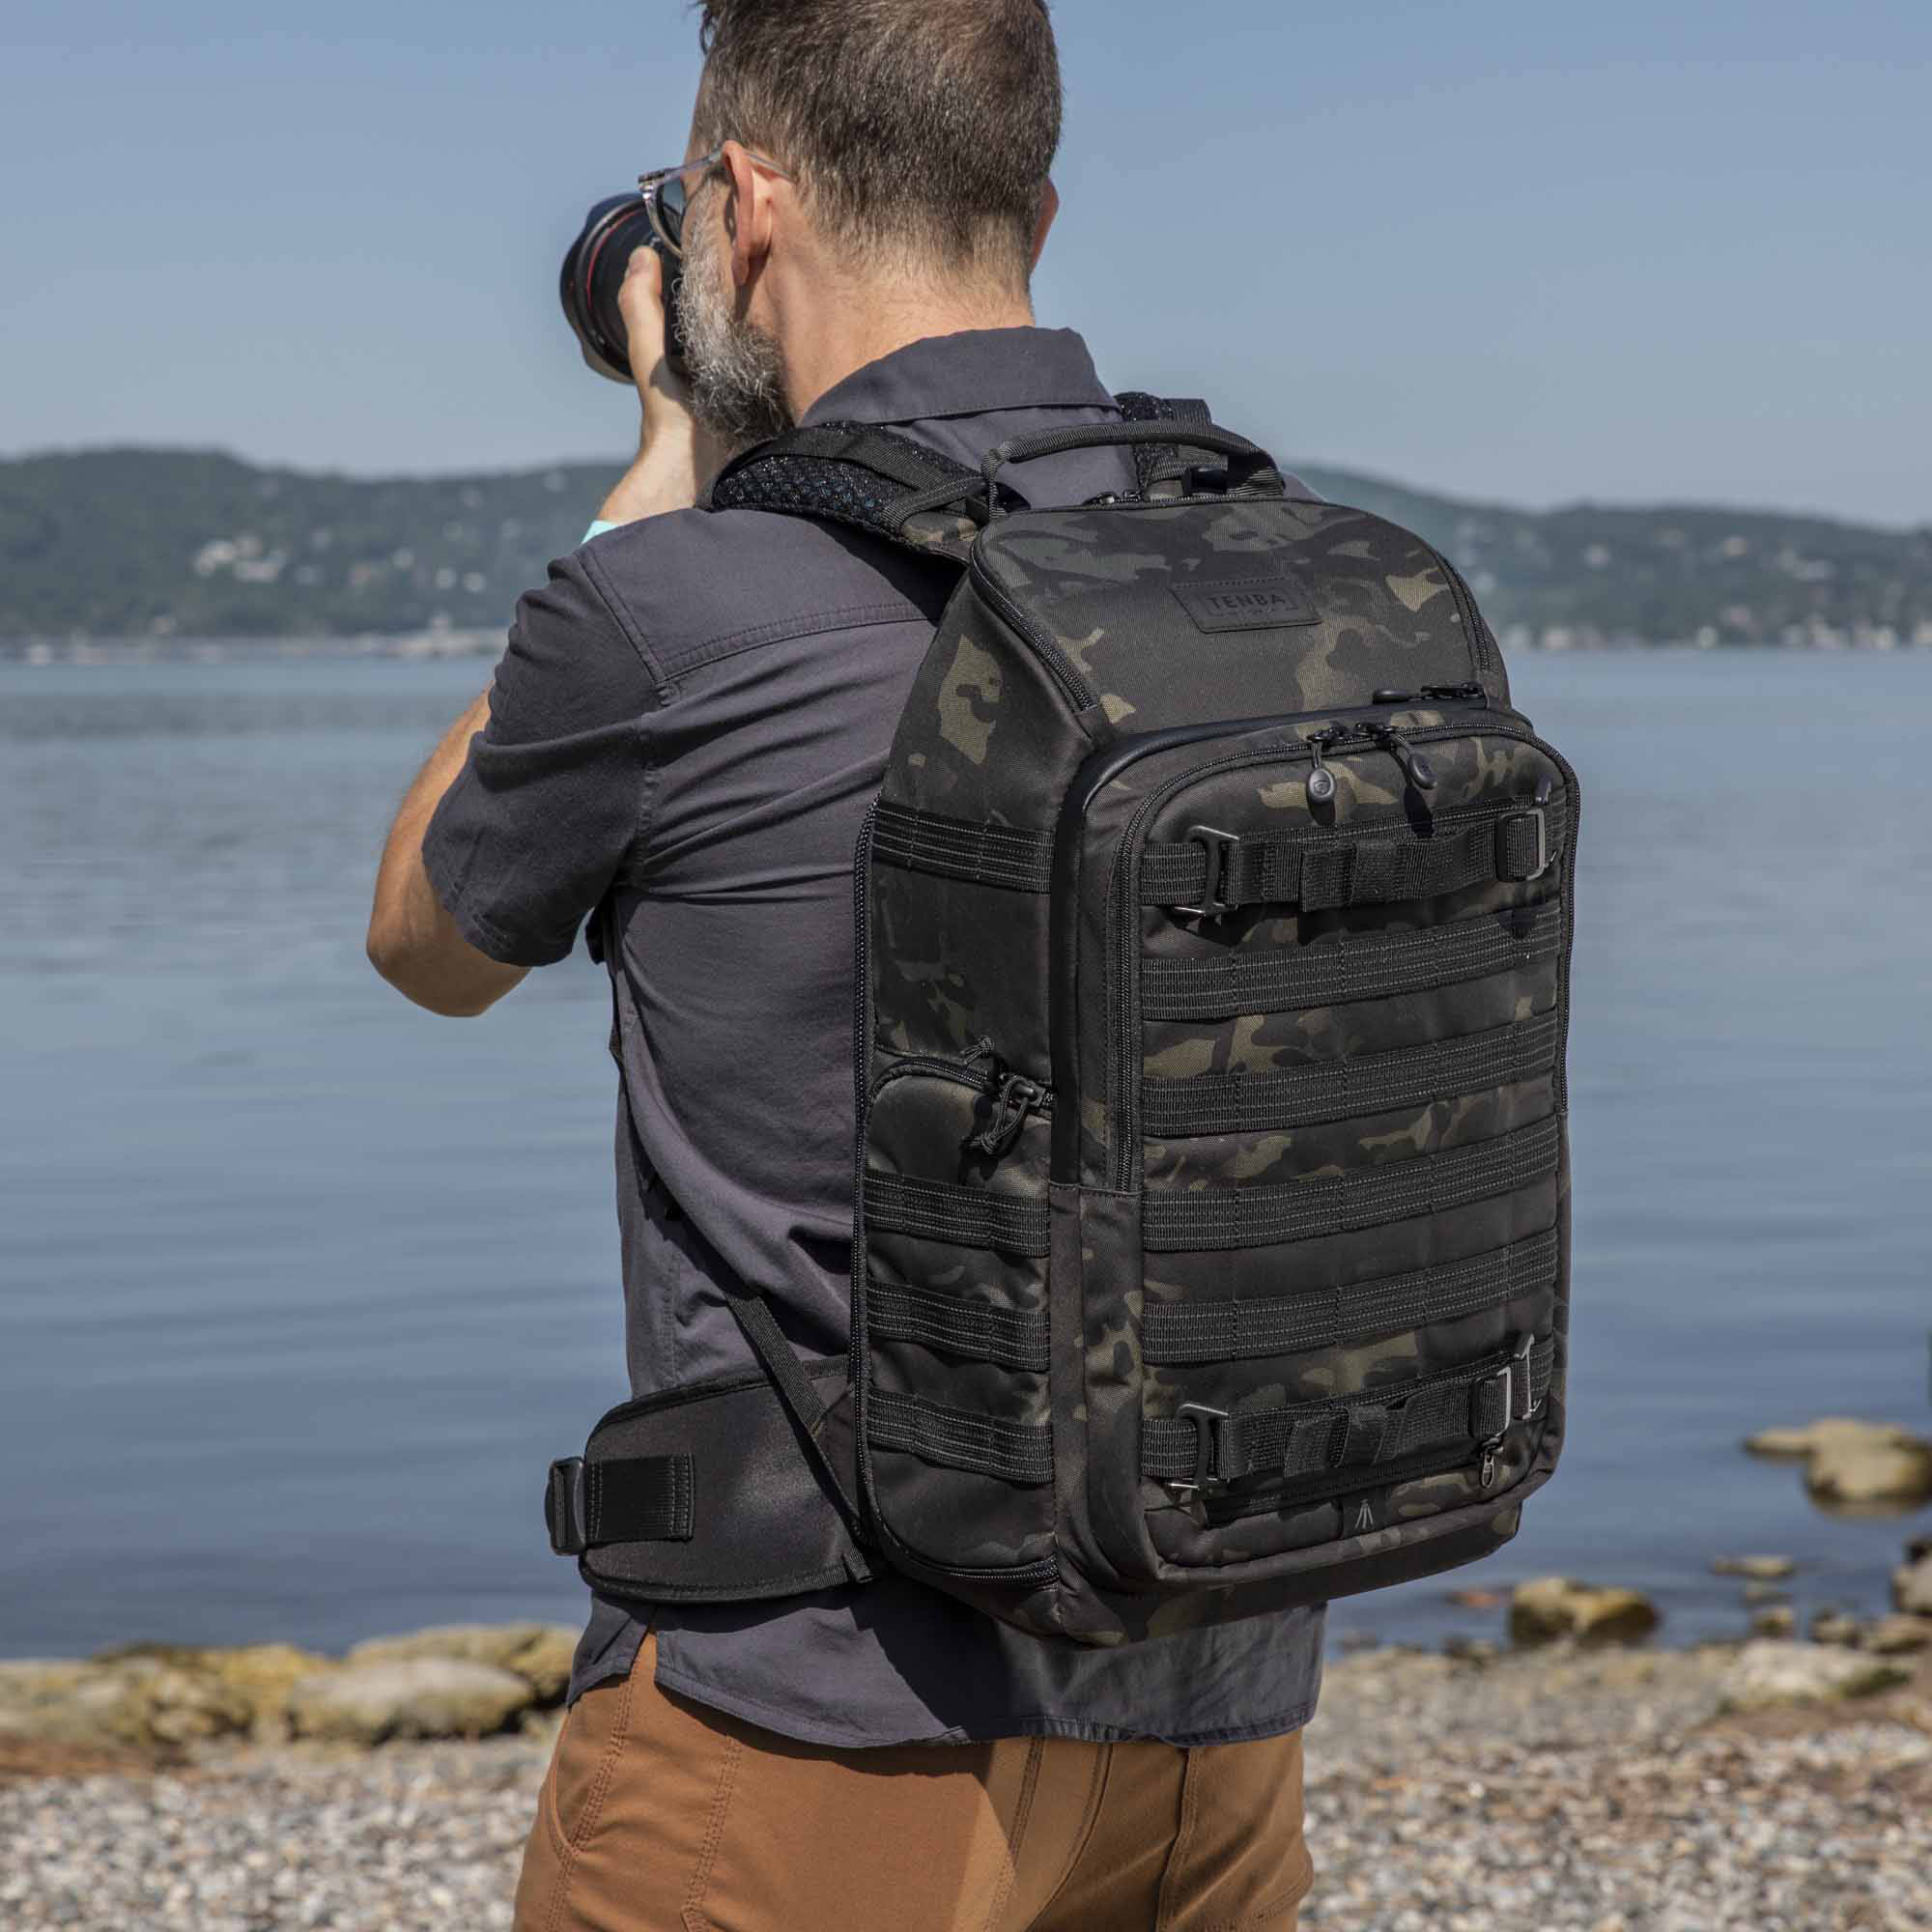    Backpack Tenba Axis v2 32l MultiCam Black